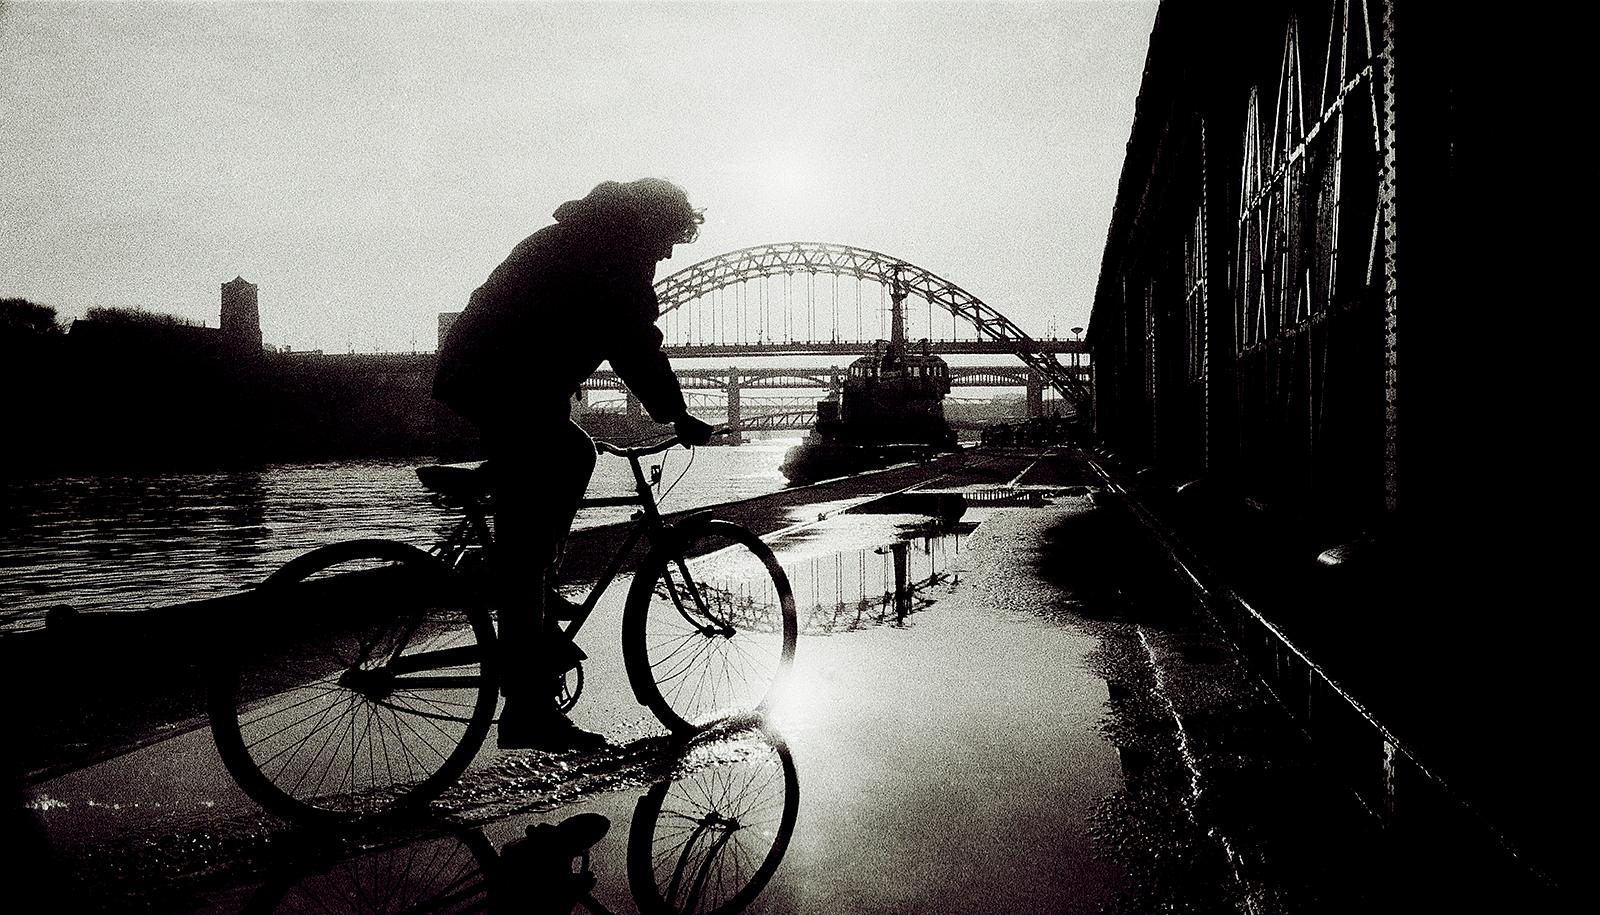 Ian Sanderson Landscape Photograph – Newcastle – signierter Kunstdruck in limitierter Auflage, Schwarz-Weiß-Foto, City